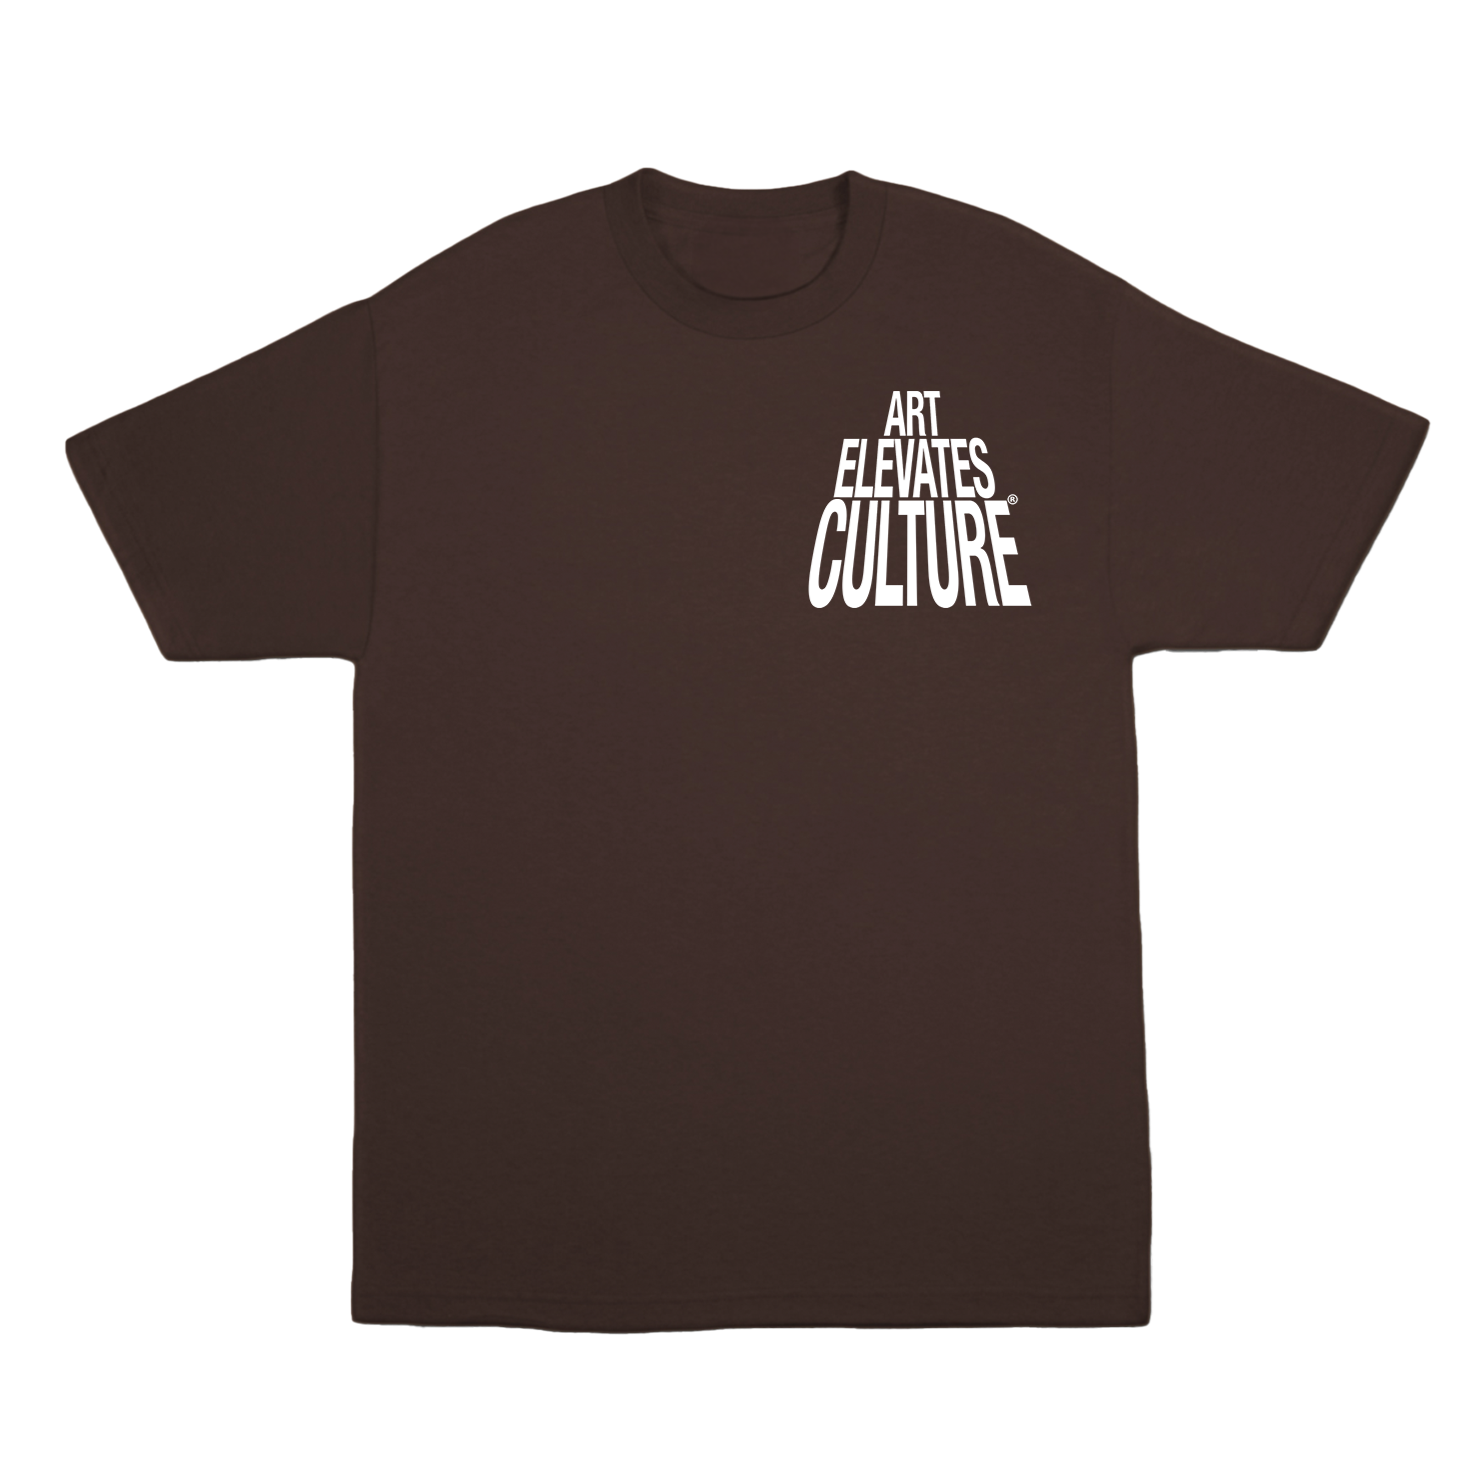 Art Elevates Culture - T-shirt (Brown)